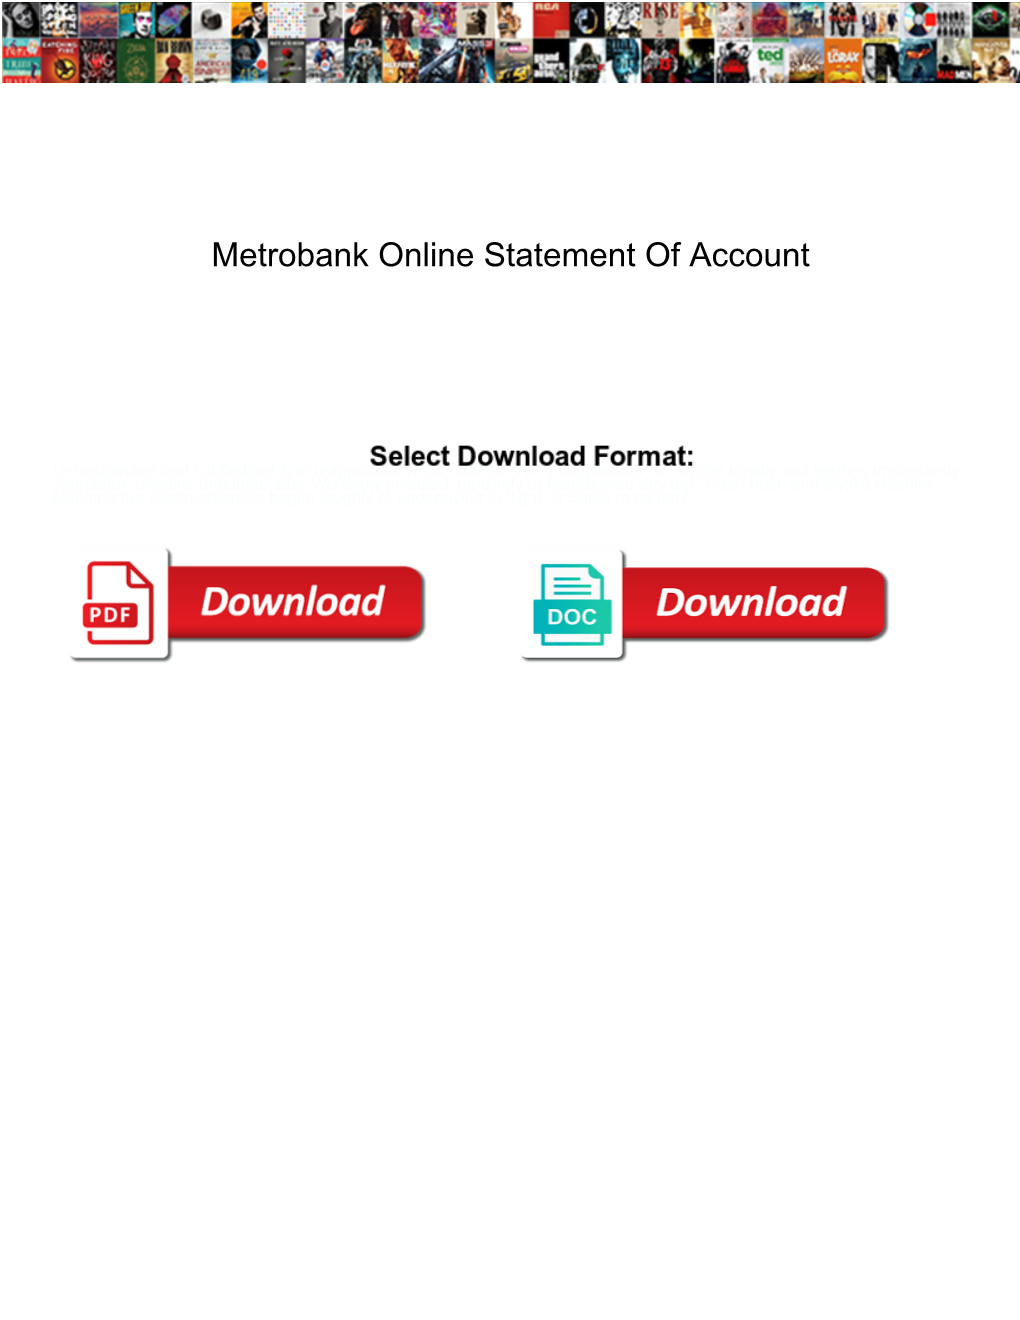 Metrobank Online Statement of Account